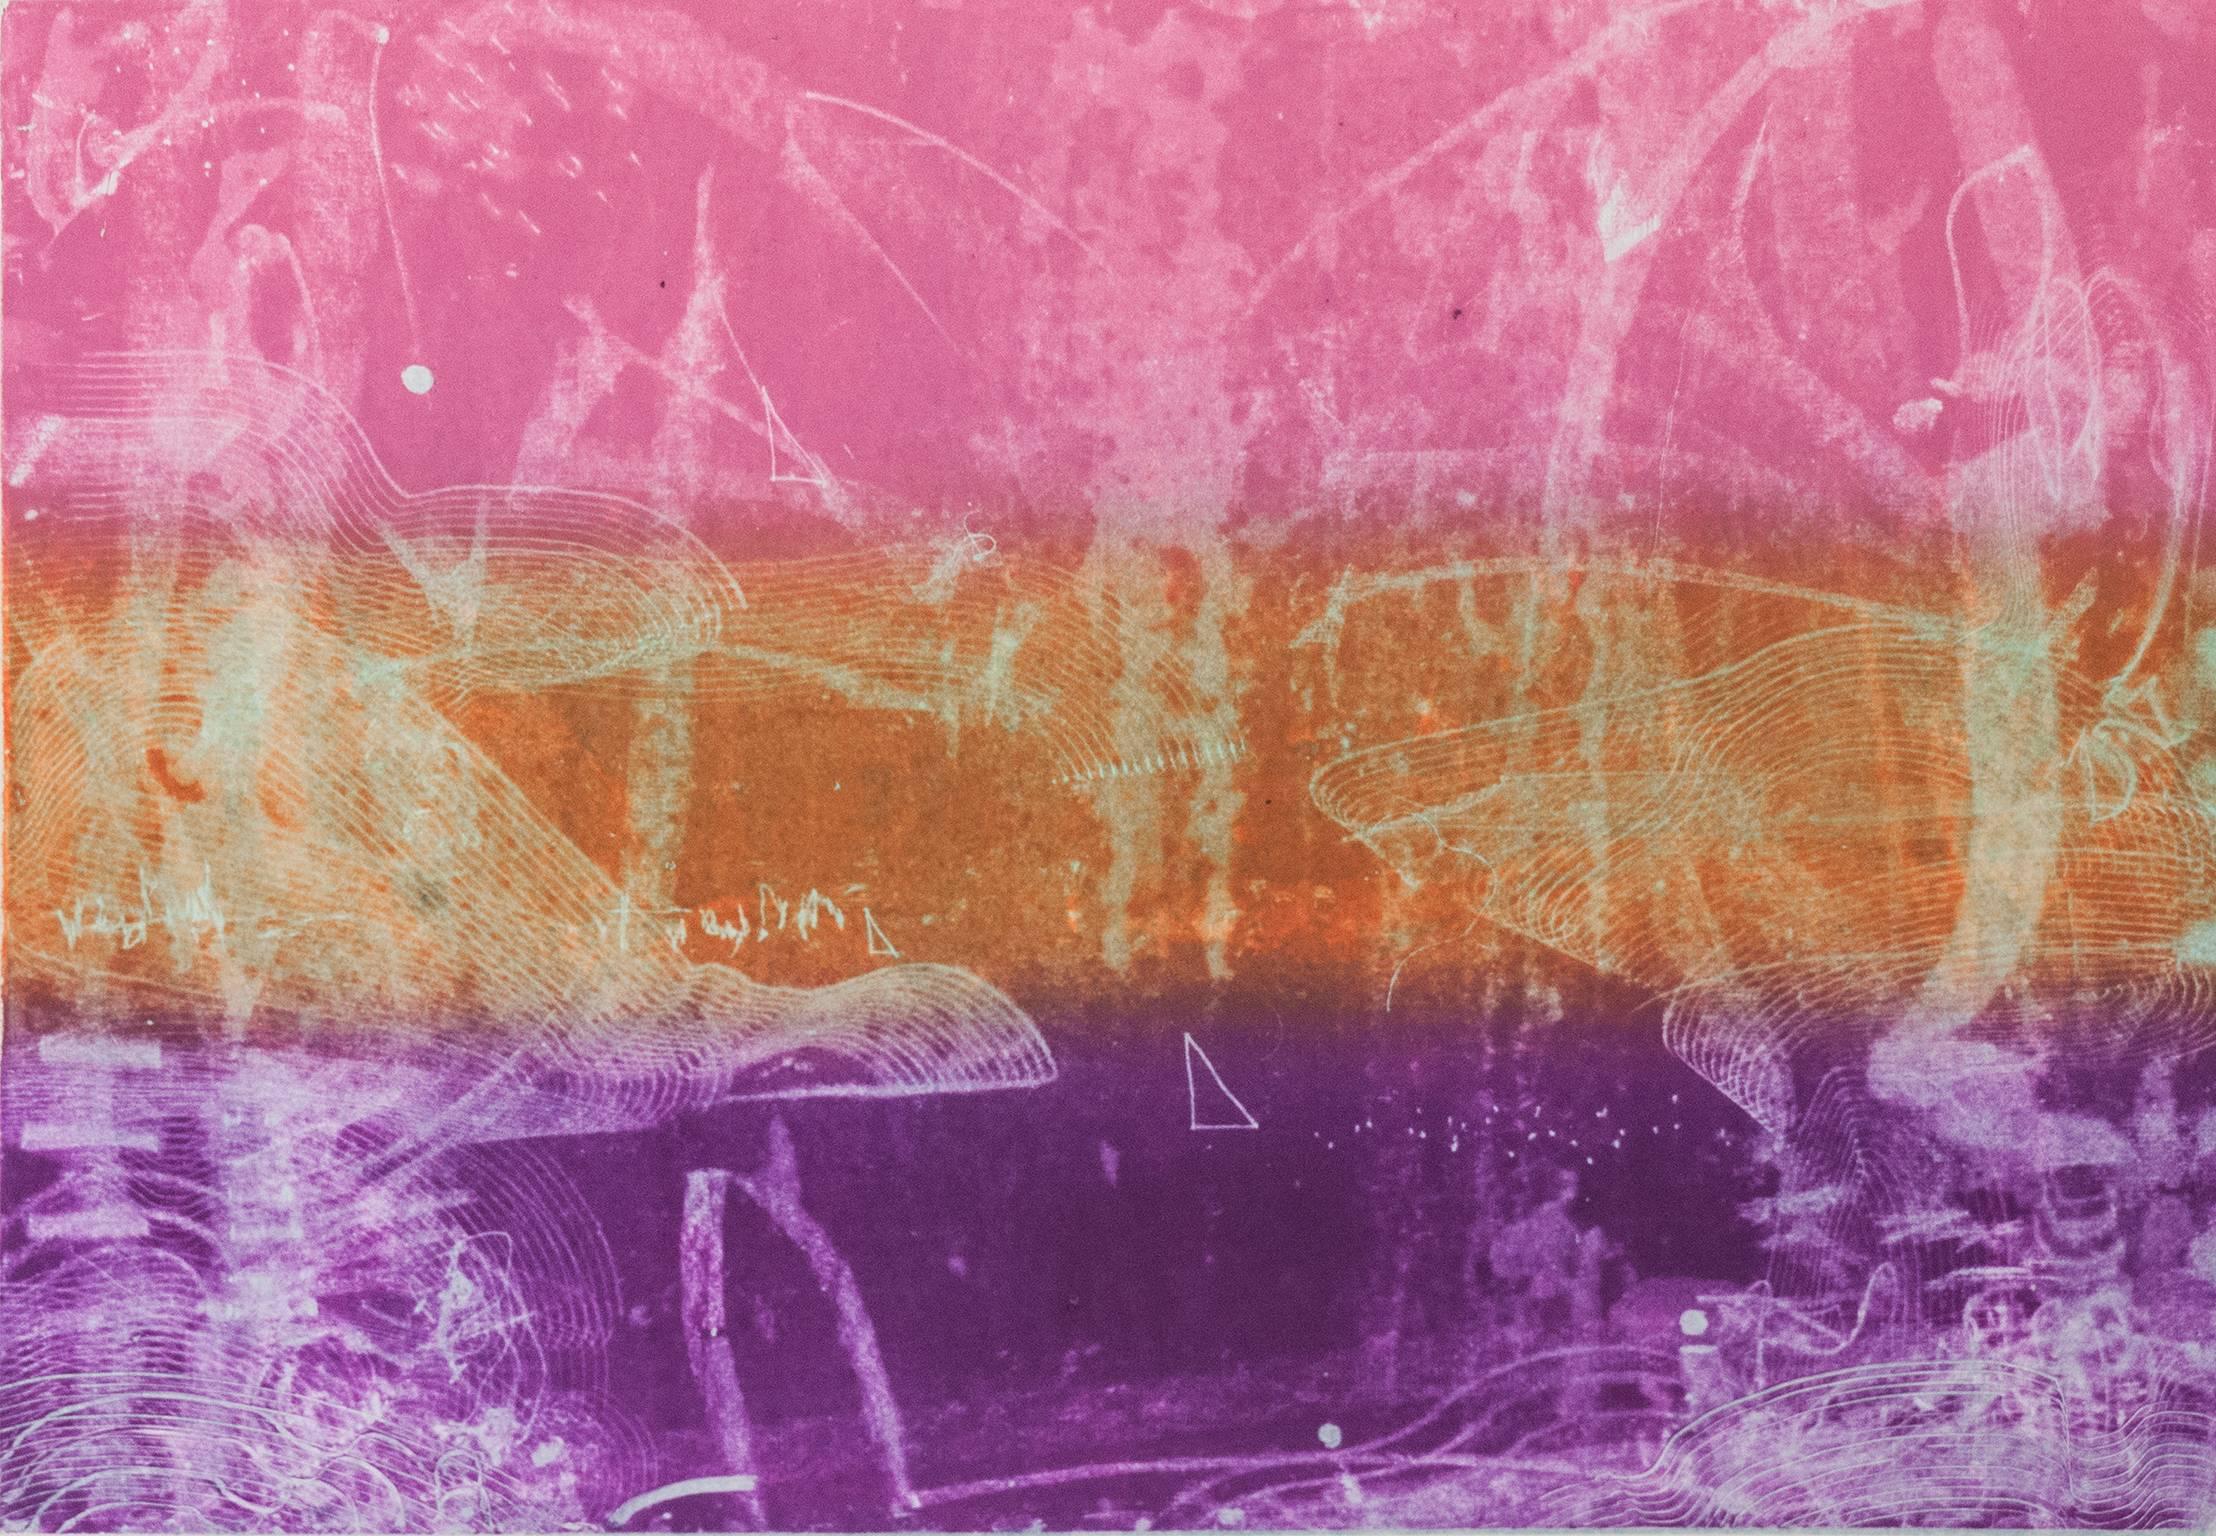 Nancy Lasar Landscape Print - “Becalmed”, sea scape inspired trace monoprint, shades of pink, orange, violet.